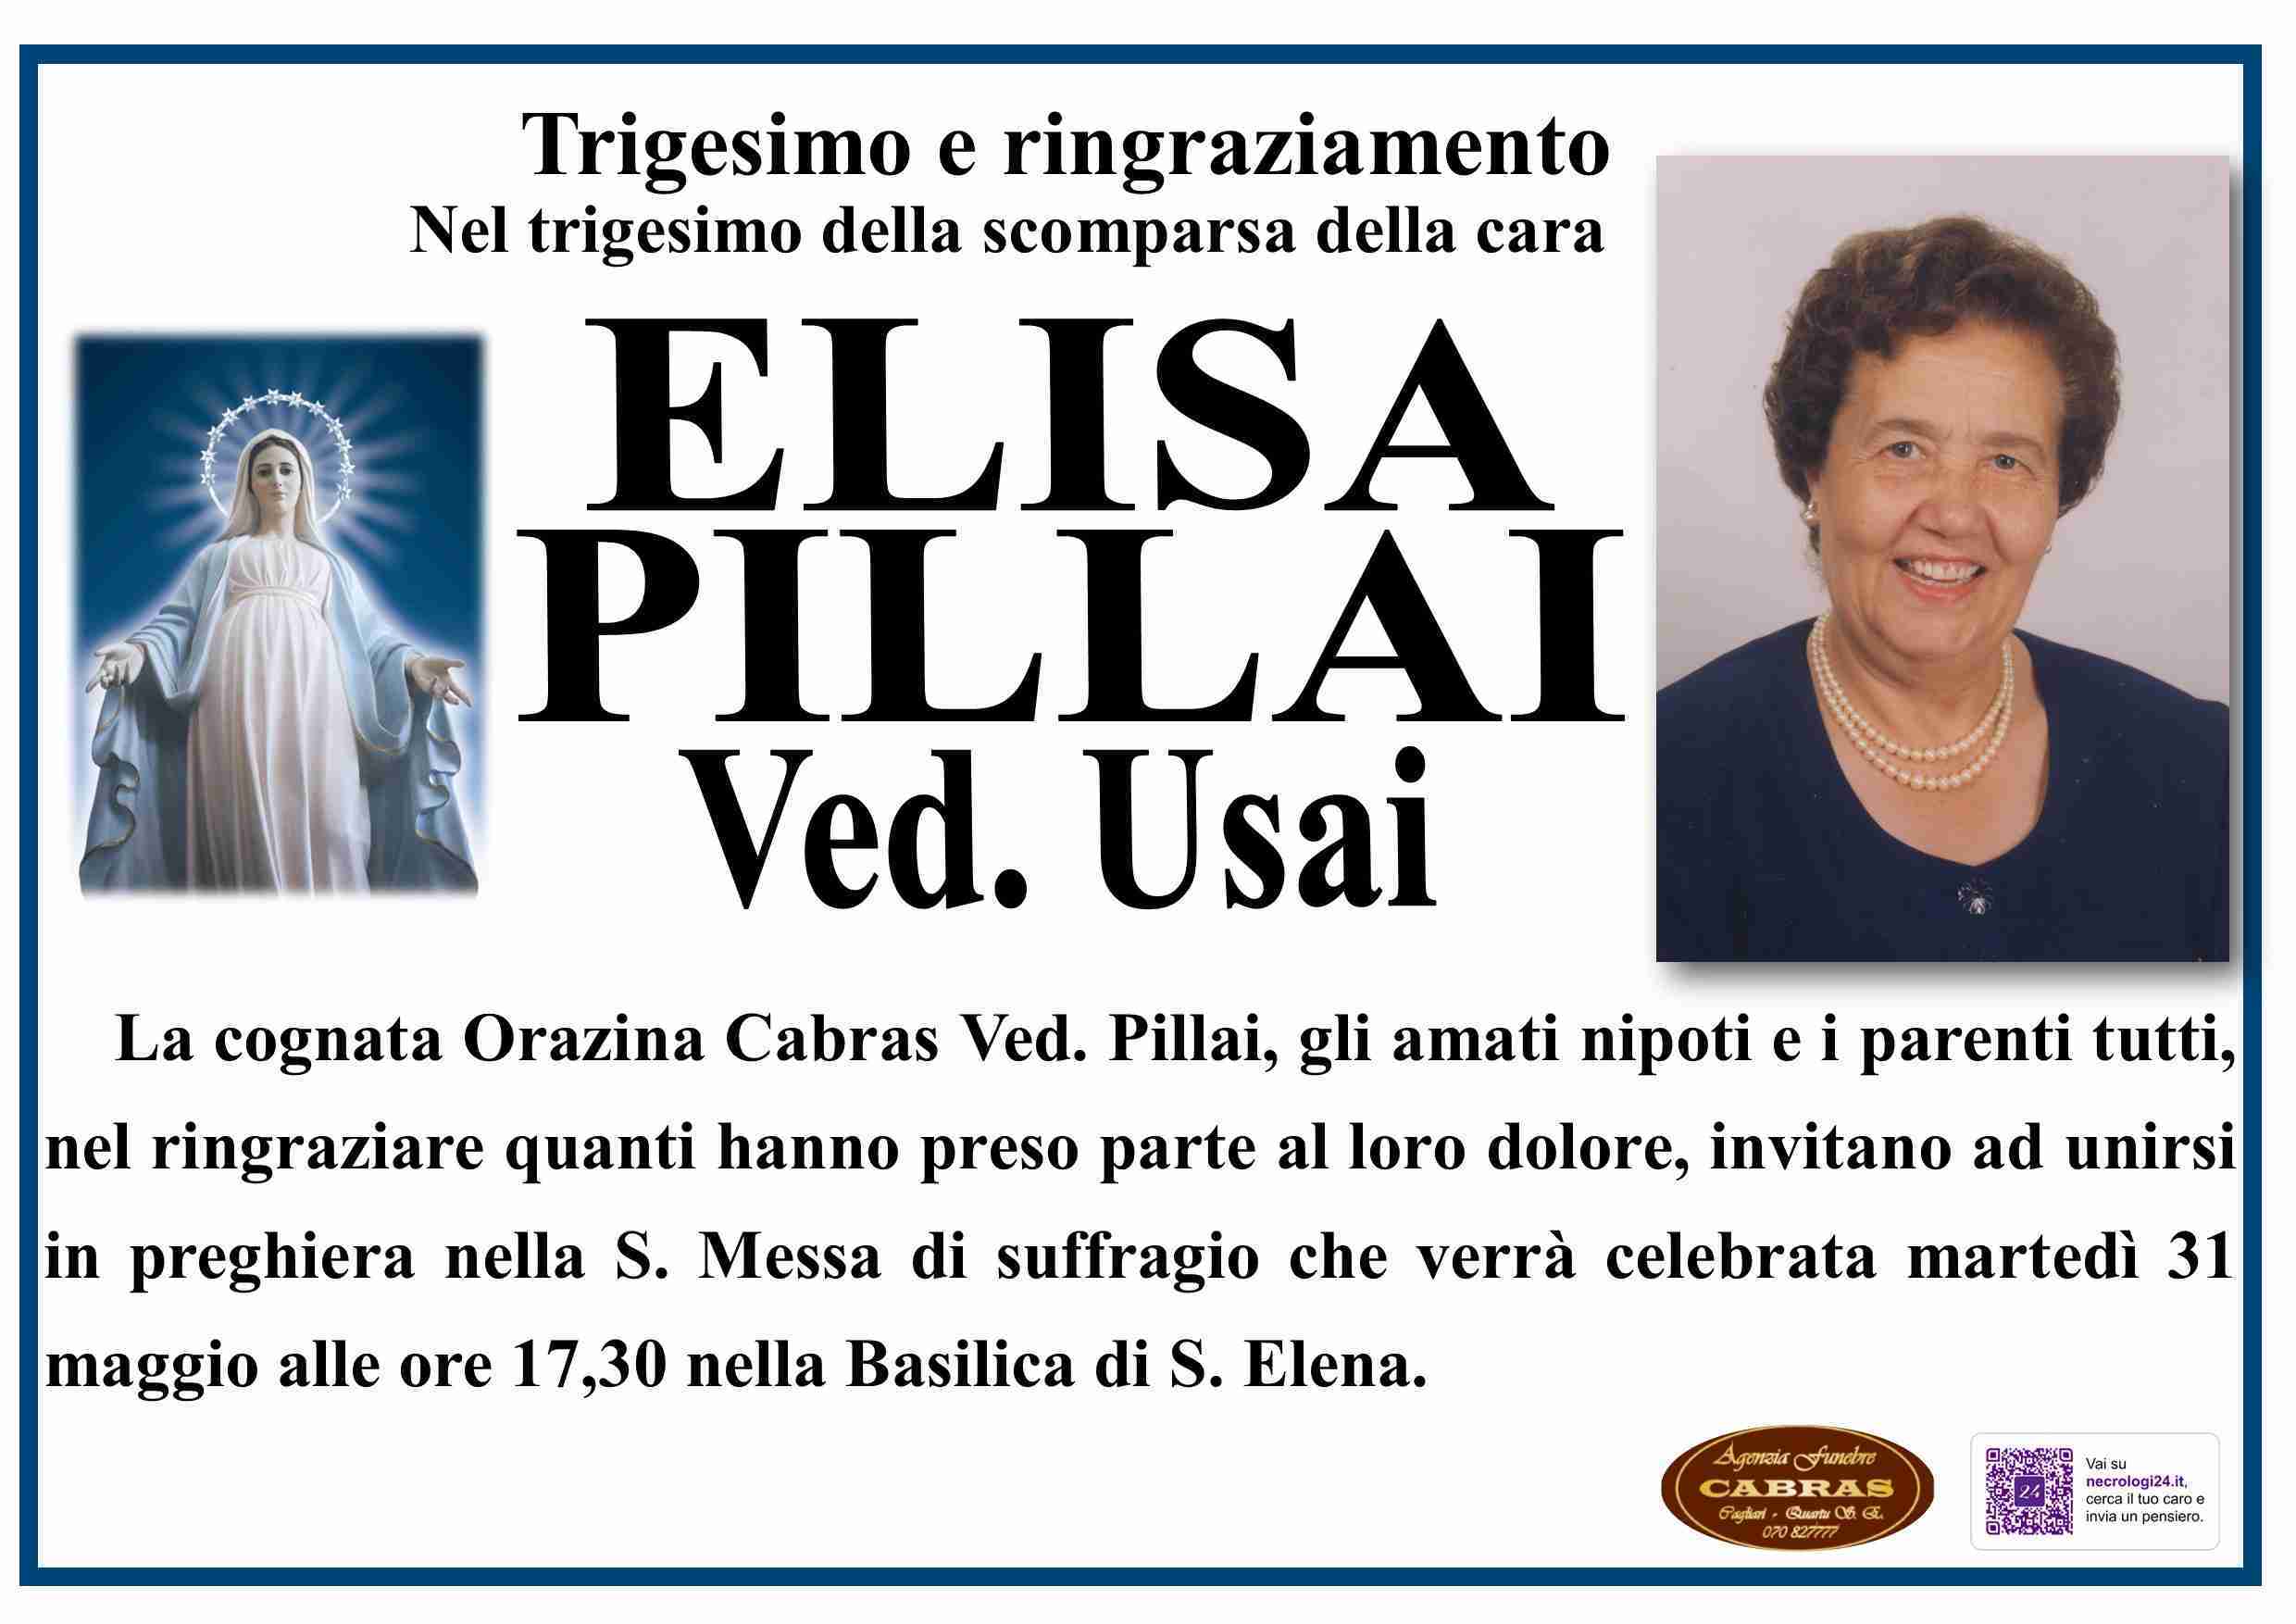 Elisa Pillai